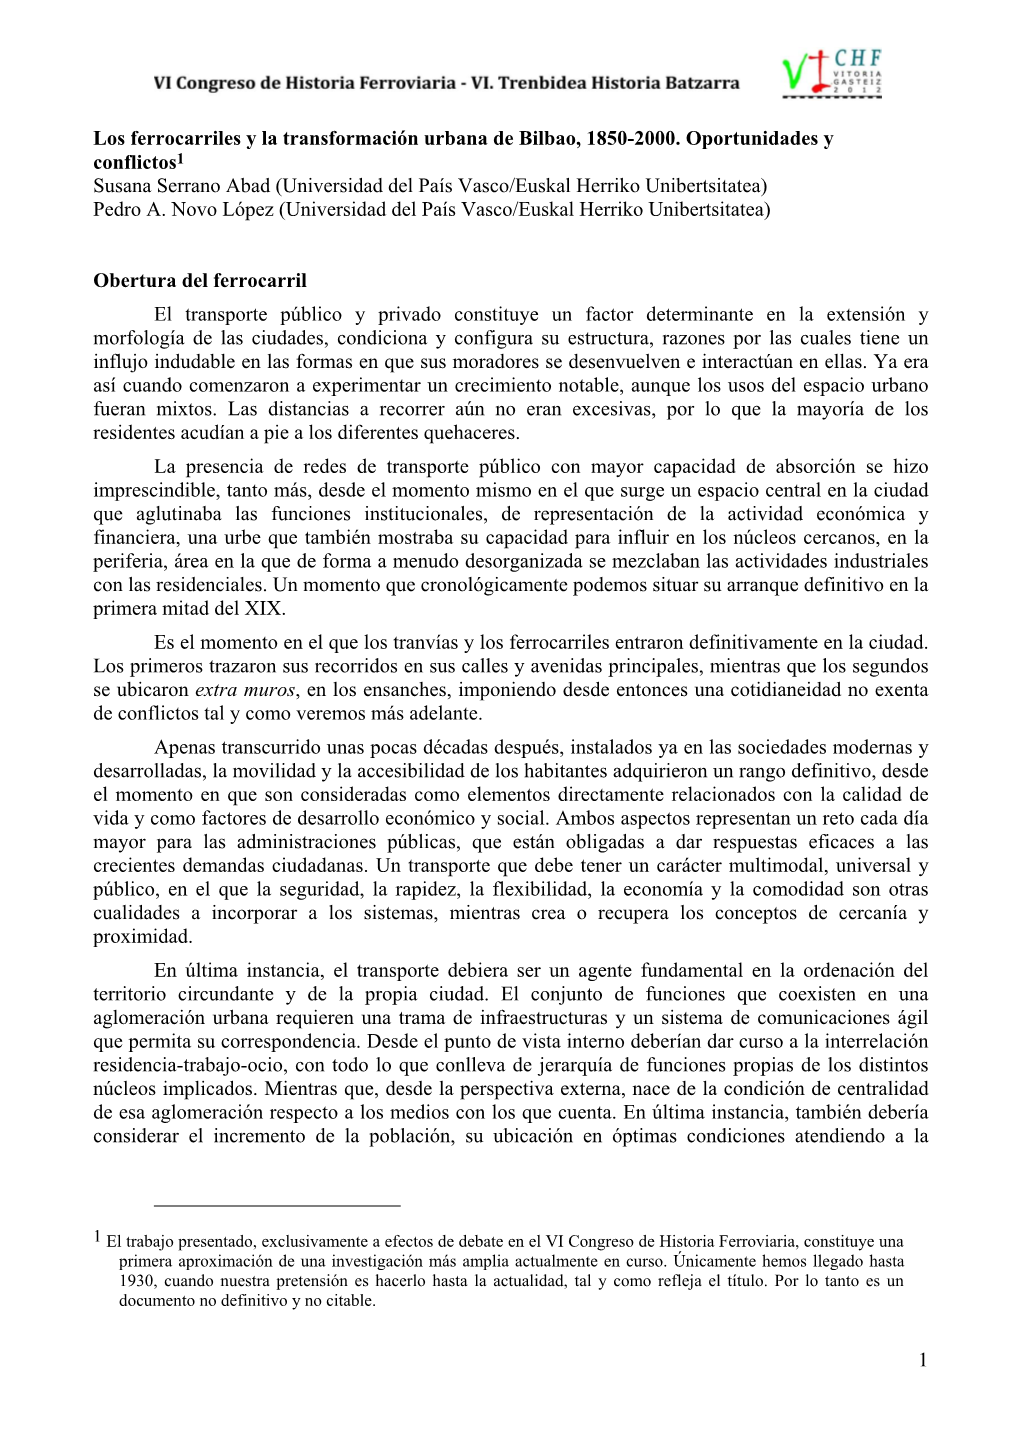 Los Ferrocarriles Y La Transformación Urbana De Bilbao, 1850-2000. Oportunidades Y Conflictos. Susana Serrano Abad